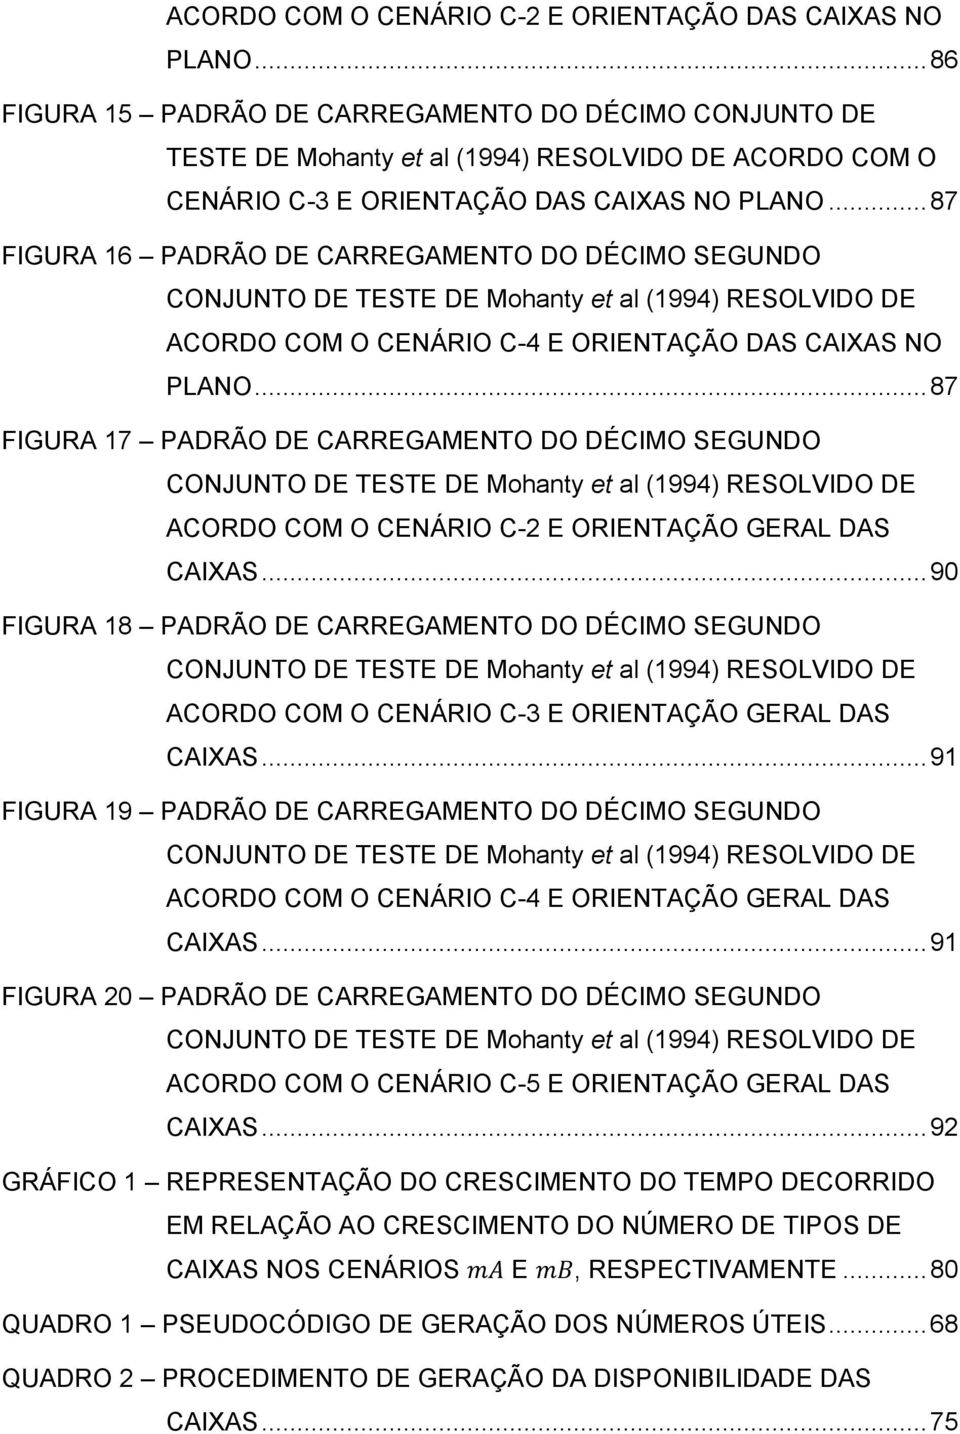 .. 87 FIGURA 16 PADRÃO DE CARREGAMENTO DO DÉCIMO SEGUNDO CONJUNTO DE TESTE DE Mohanty et al (1994) RESOLVIDO DE ACORDO COM O CENÁRIO C-4 E ORIENTAÇÃO DAS CAIXAS NO PLANO.